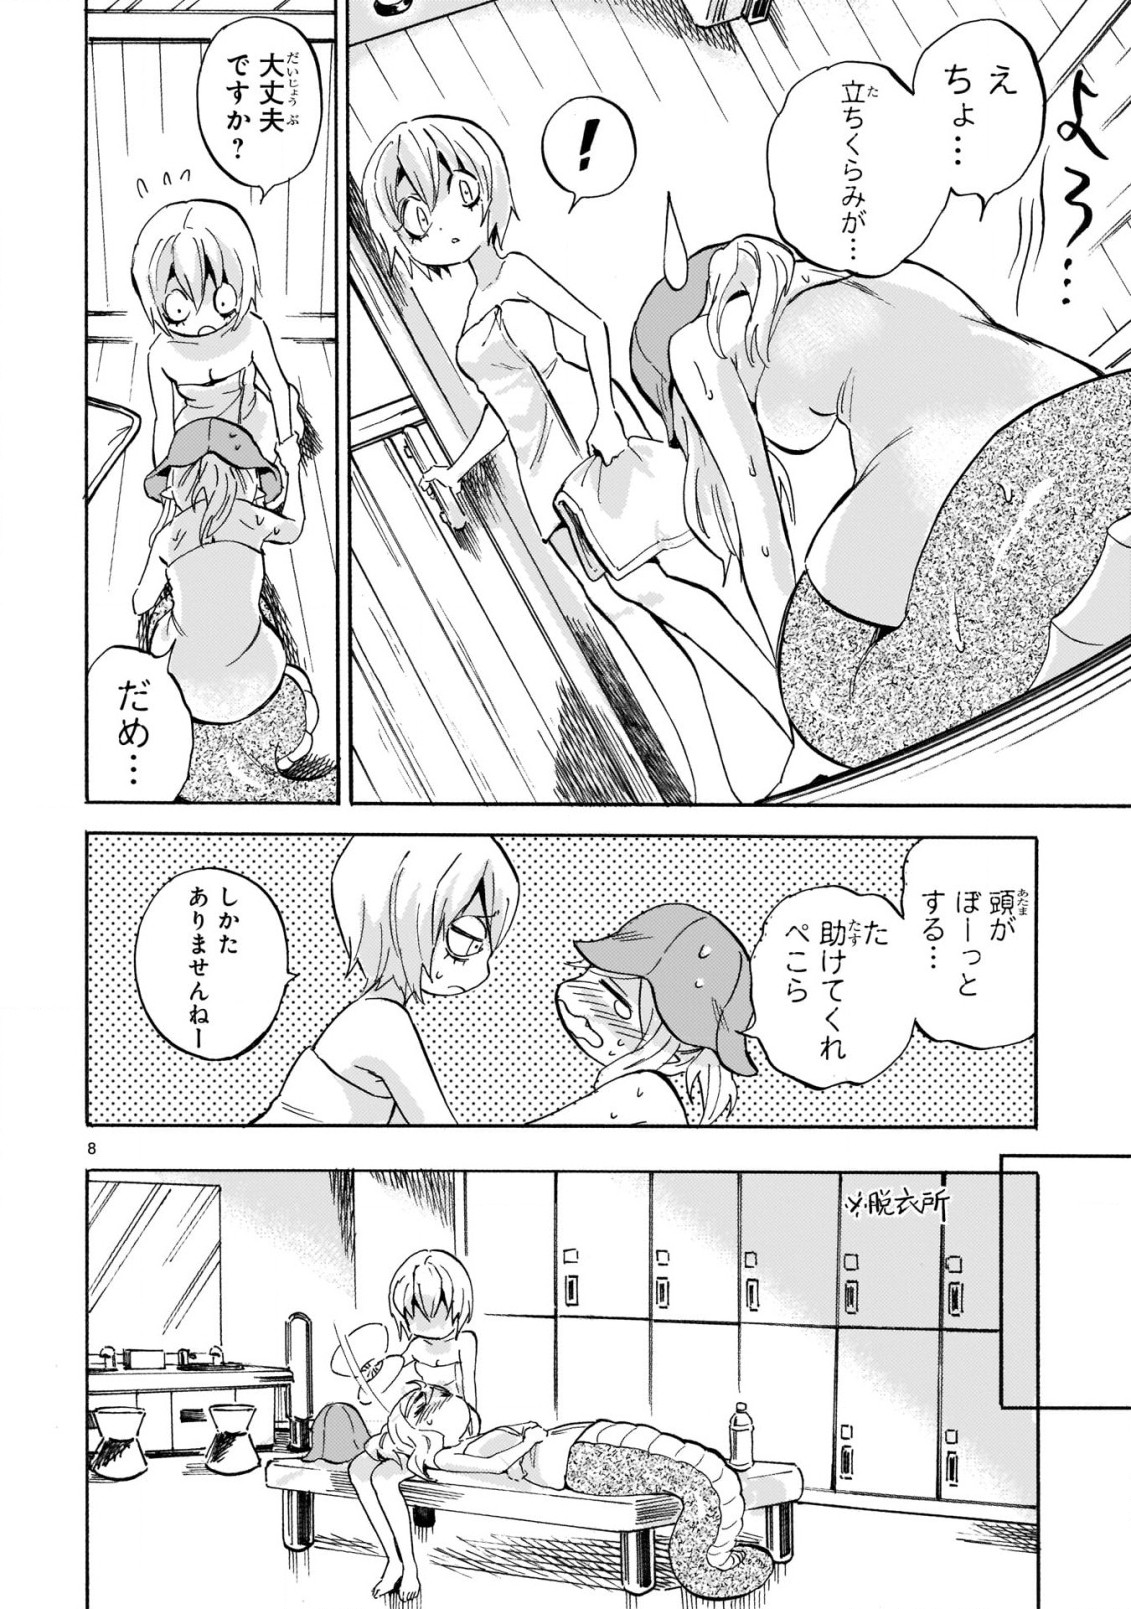 Jashin-chan Dropkick - Chapter 222 - Page 8